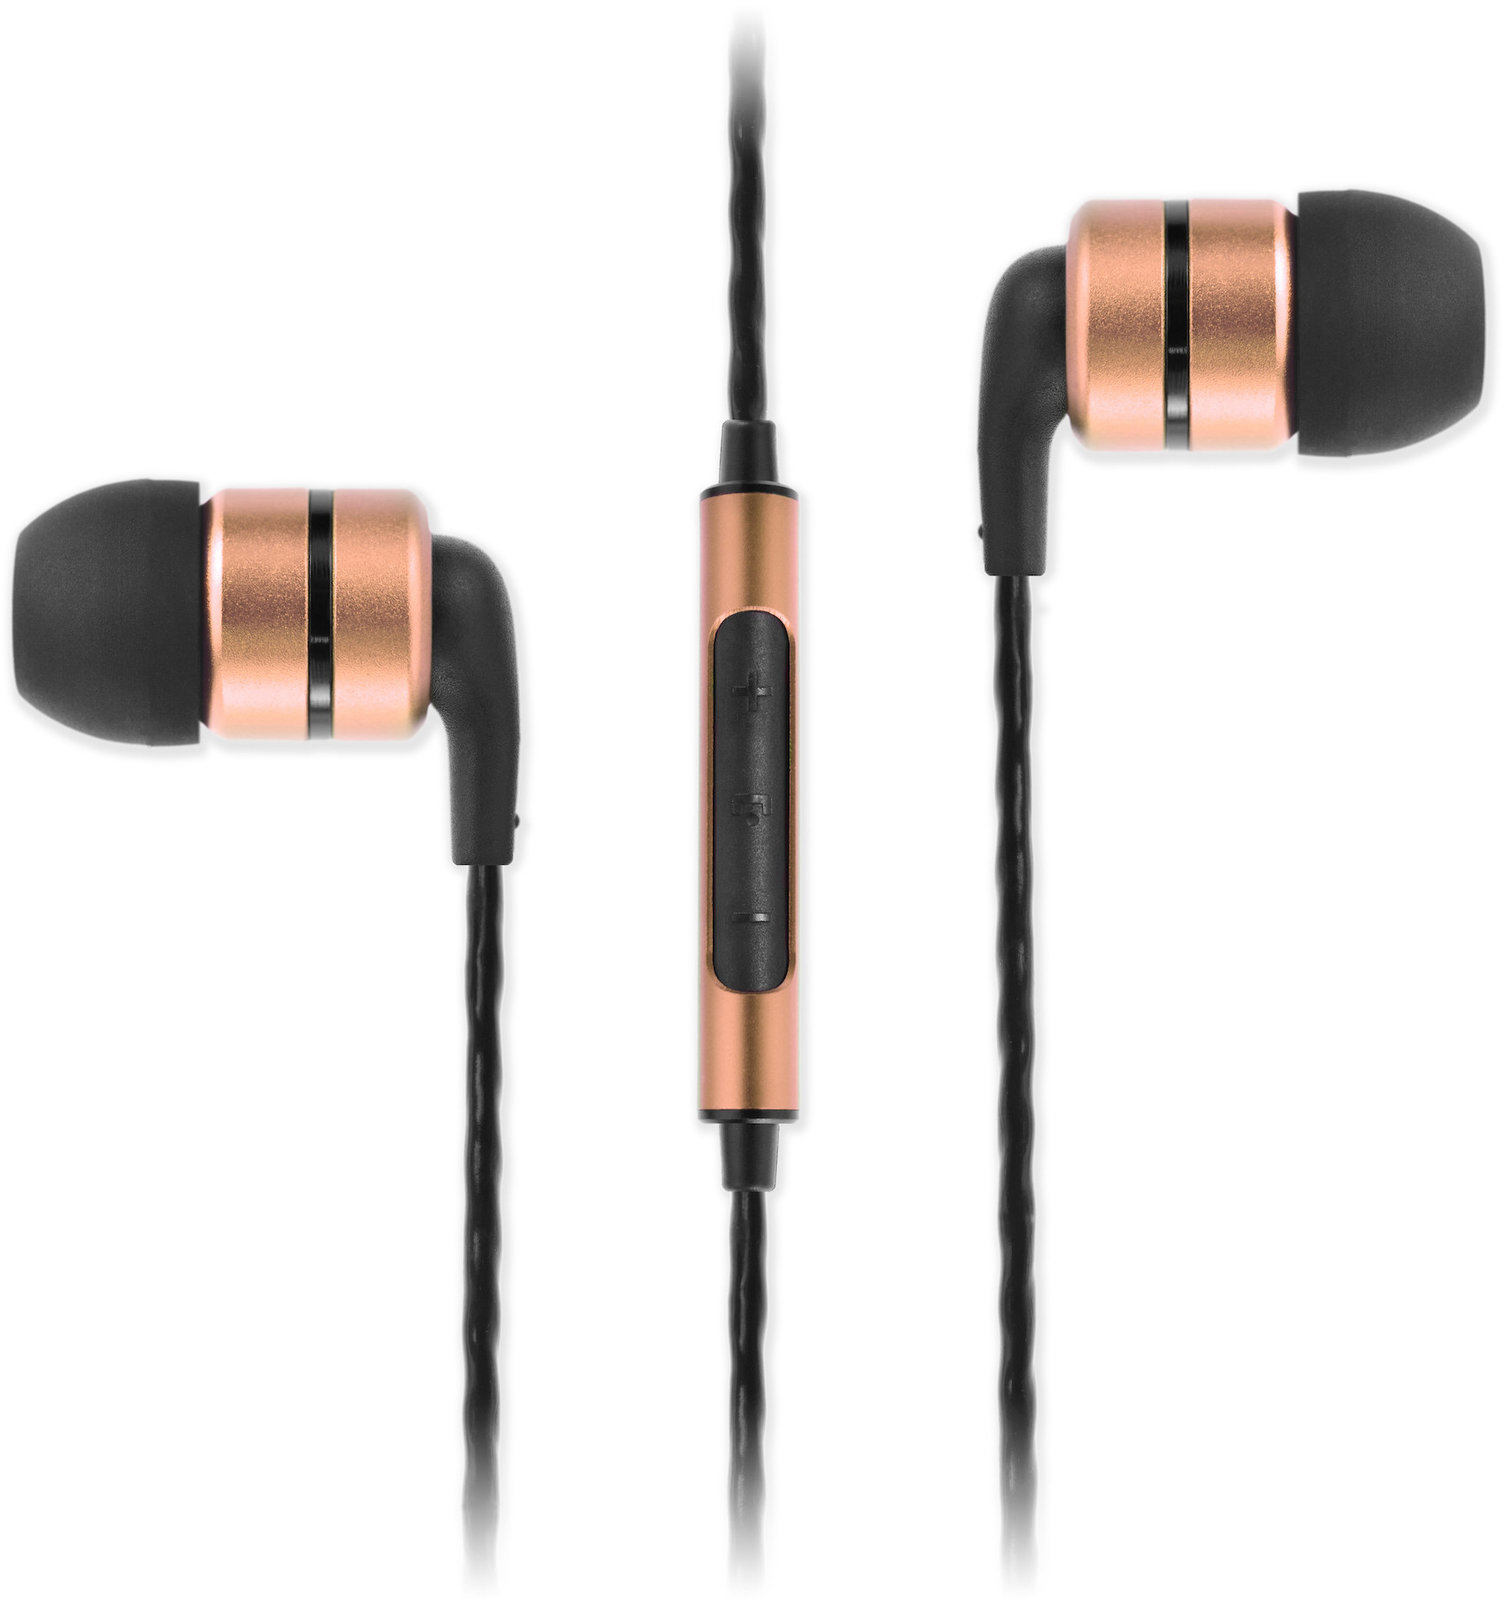 Auscultadores intra-auriculares SoundMAGIC E80C Black Gold